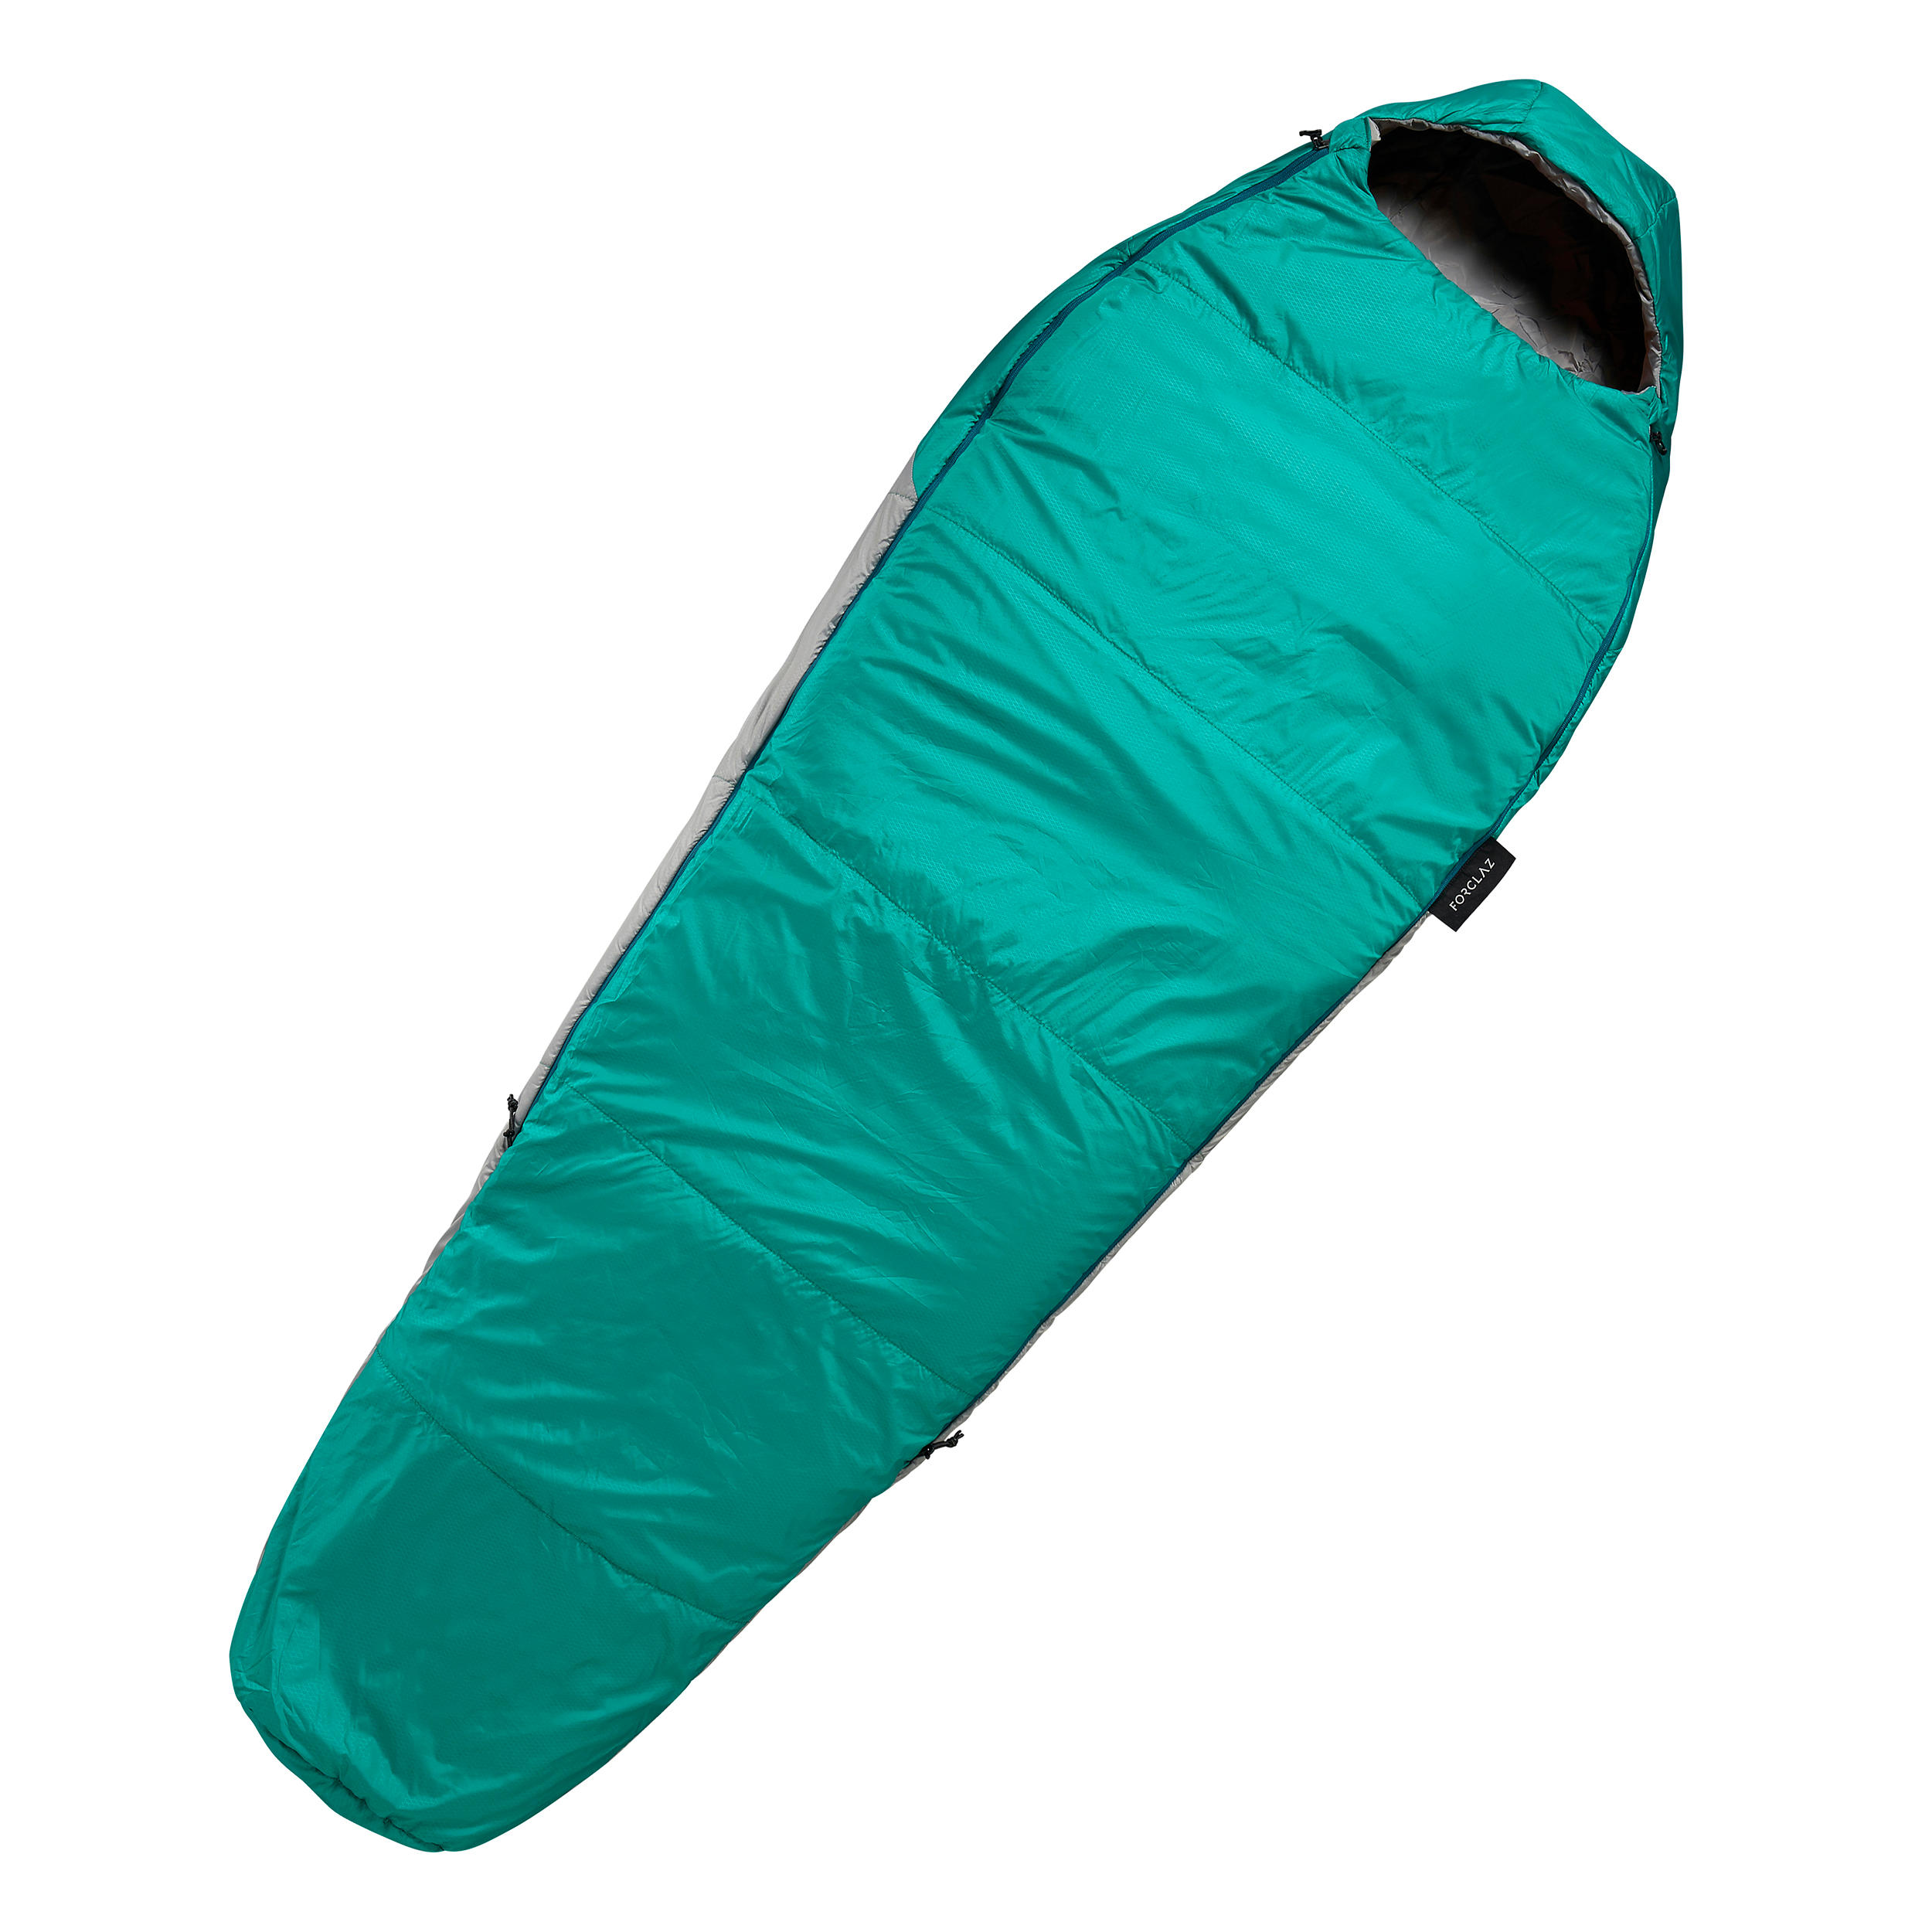 Buy Trekking Sleeping Bag - MT500 10°C Online | Decathlon